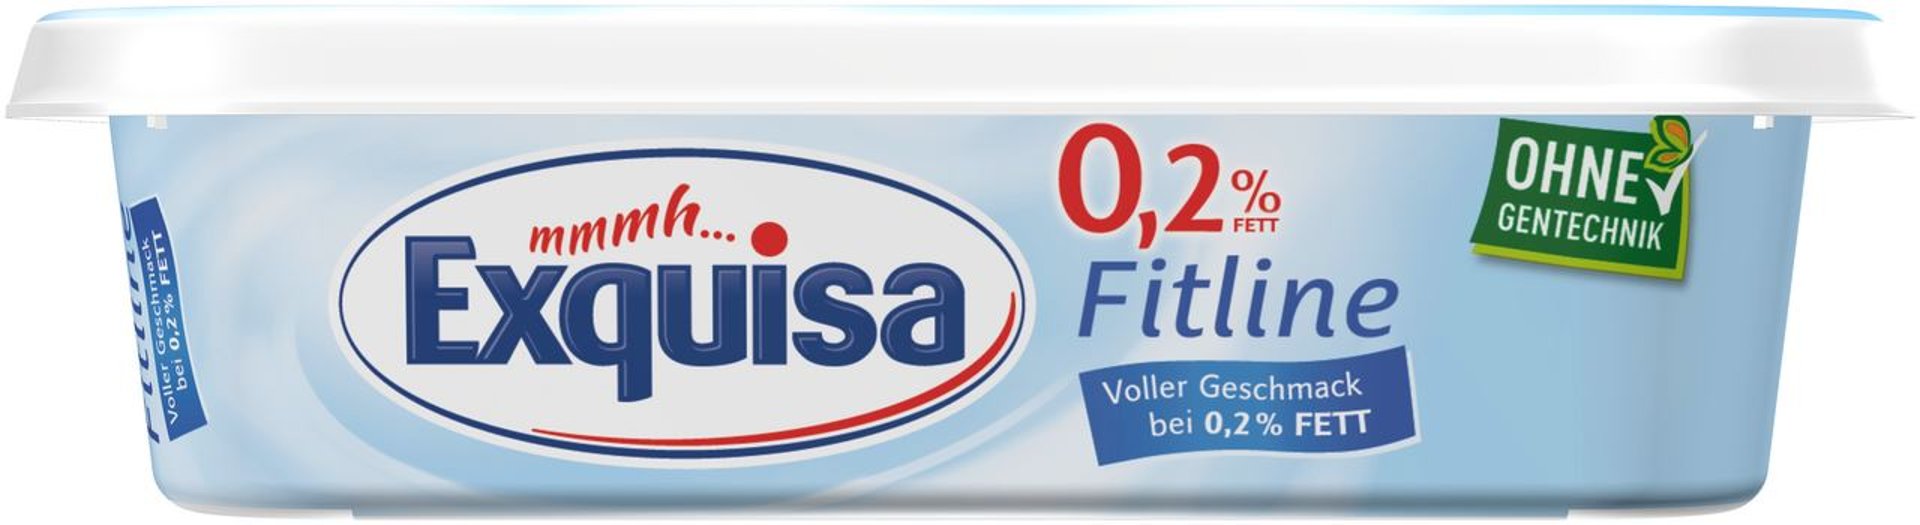 Exquisa - Frischkäse Fitline 0,2 % Fett - 1 x 200 g Bocksbeutel